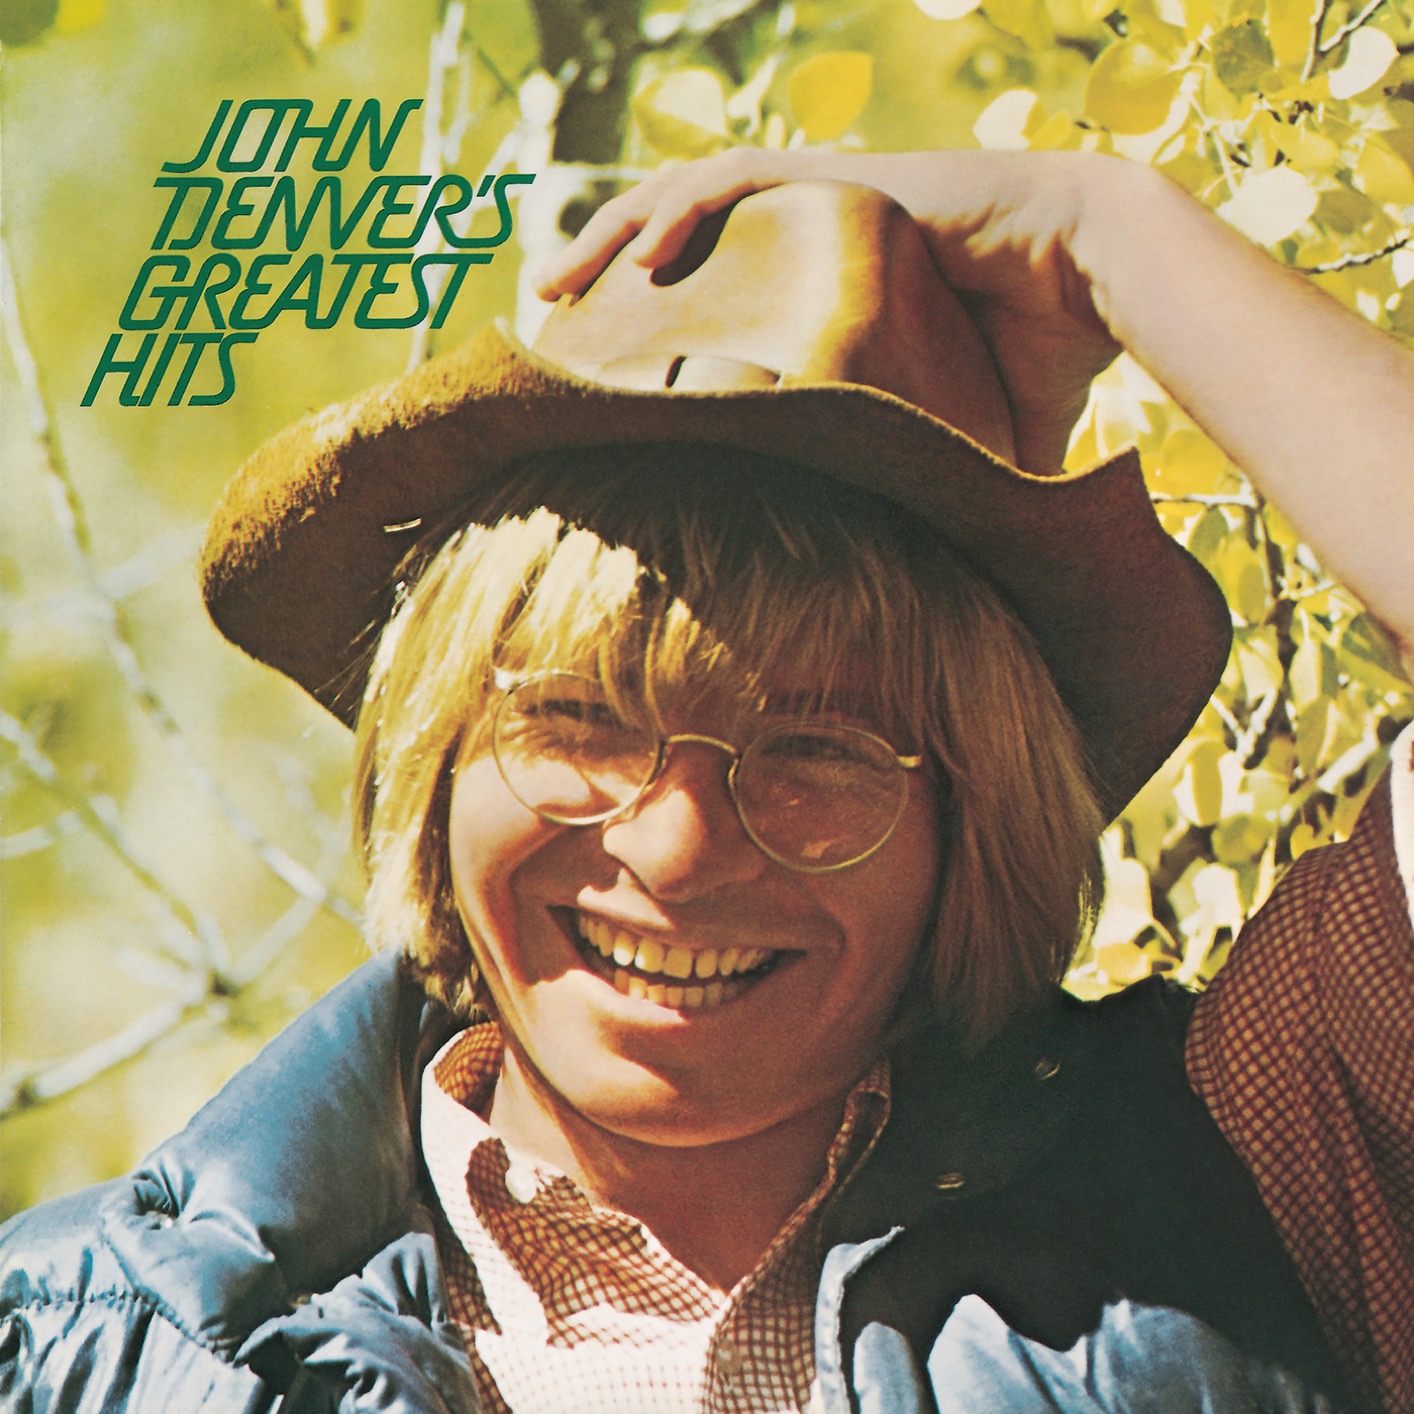 John Denver - John Denver’s Greatest Hits (Remastered) (1973/2019) [FLAC 24bit/96kHz]